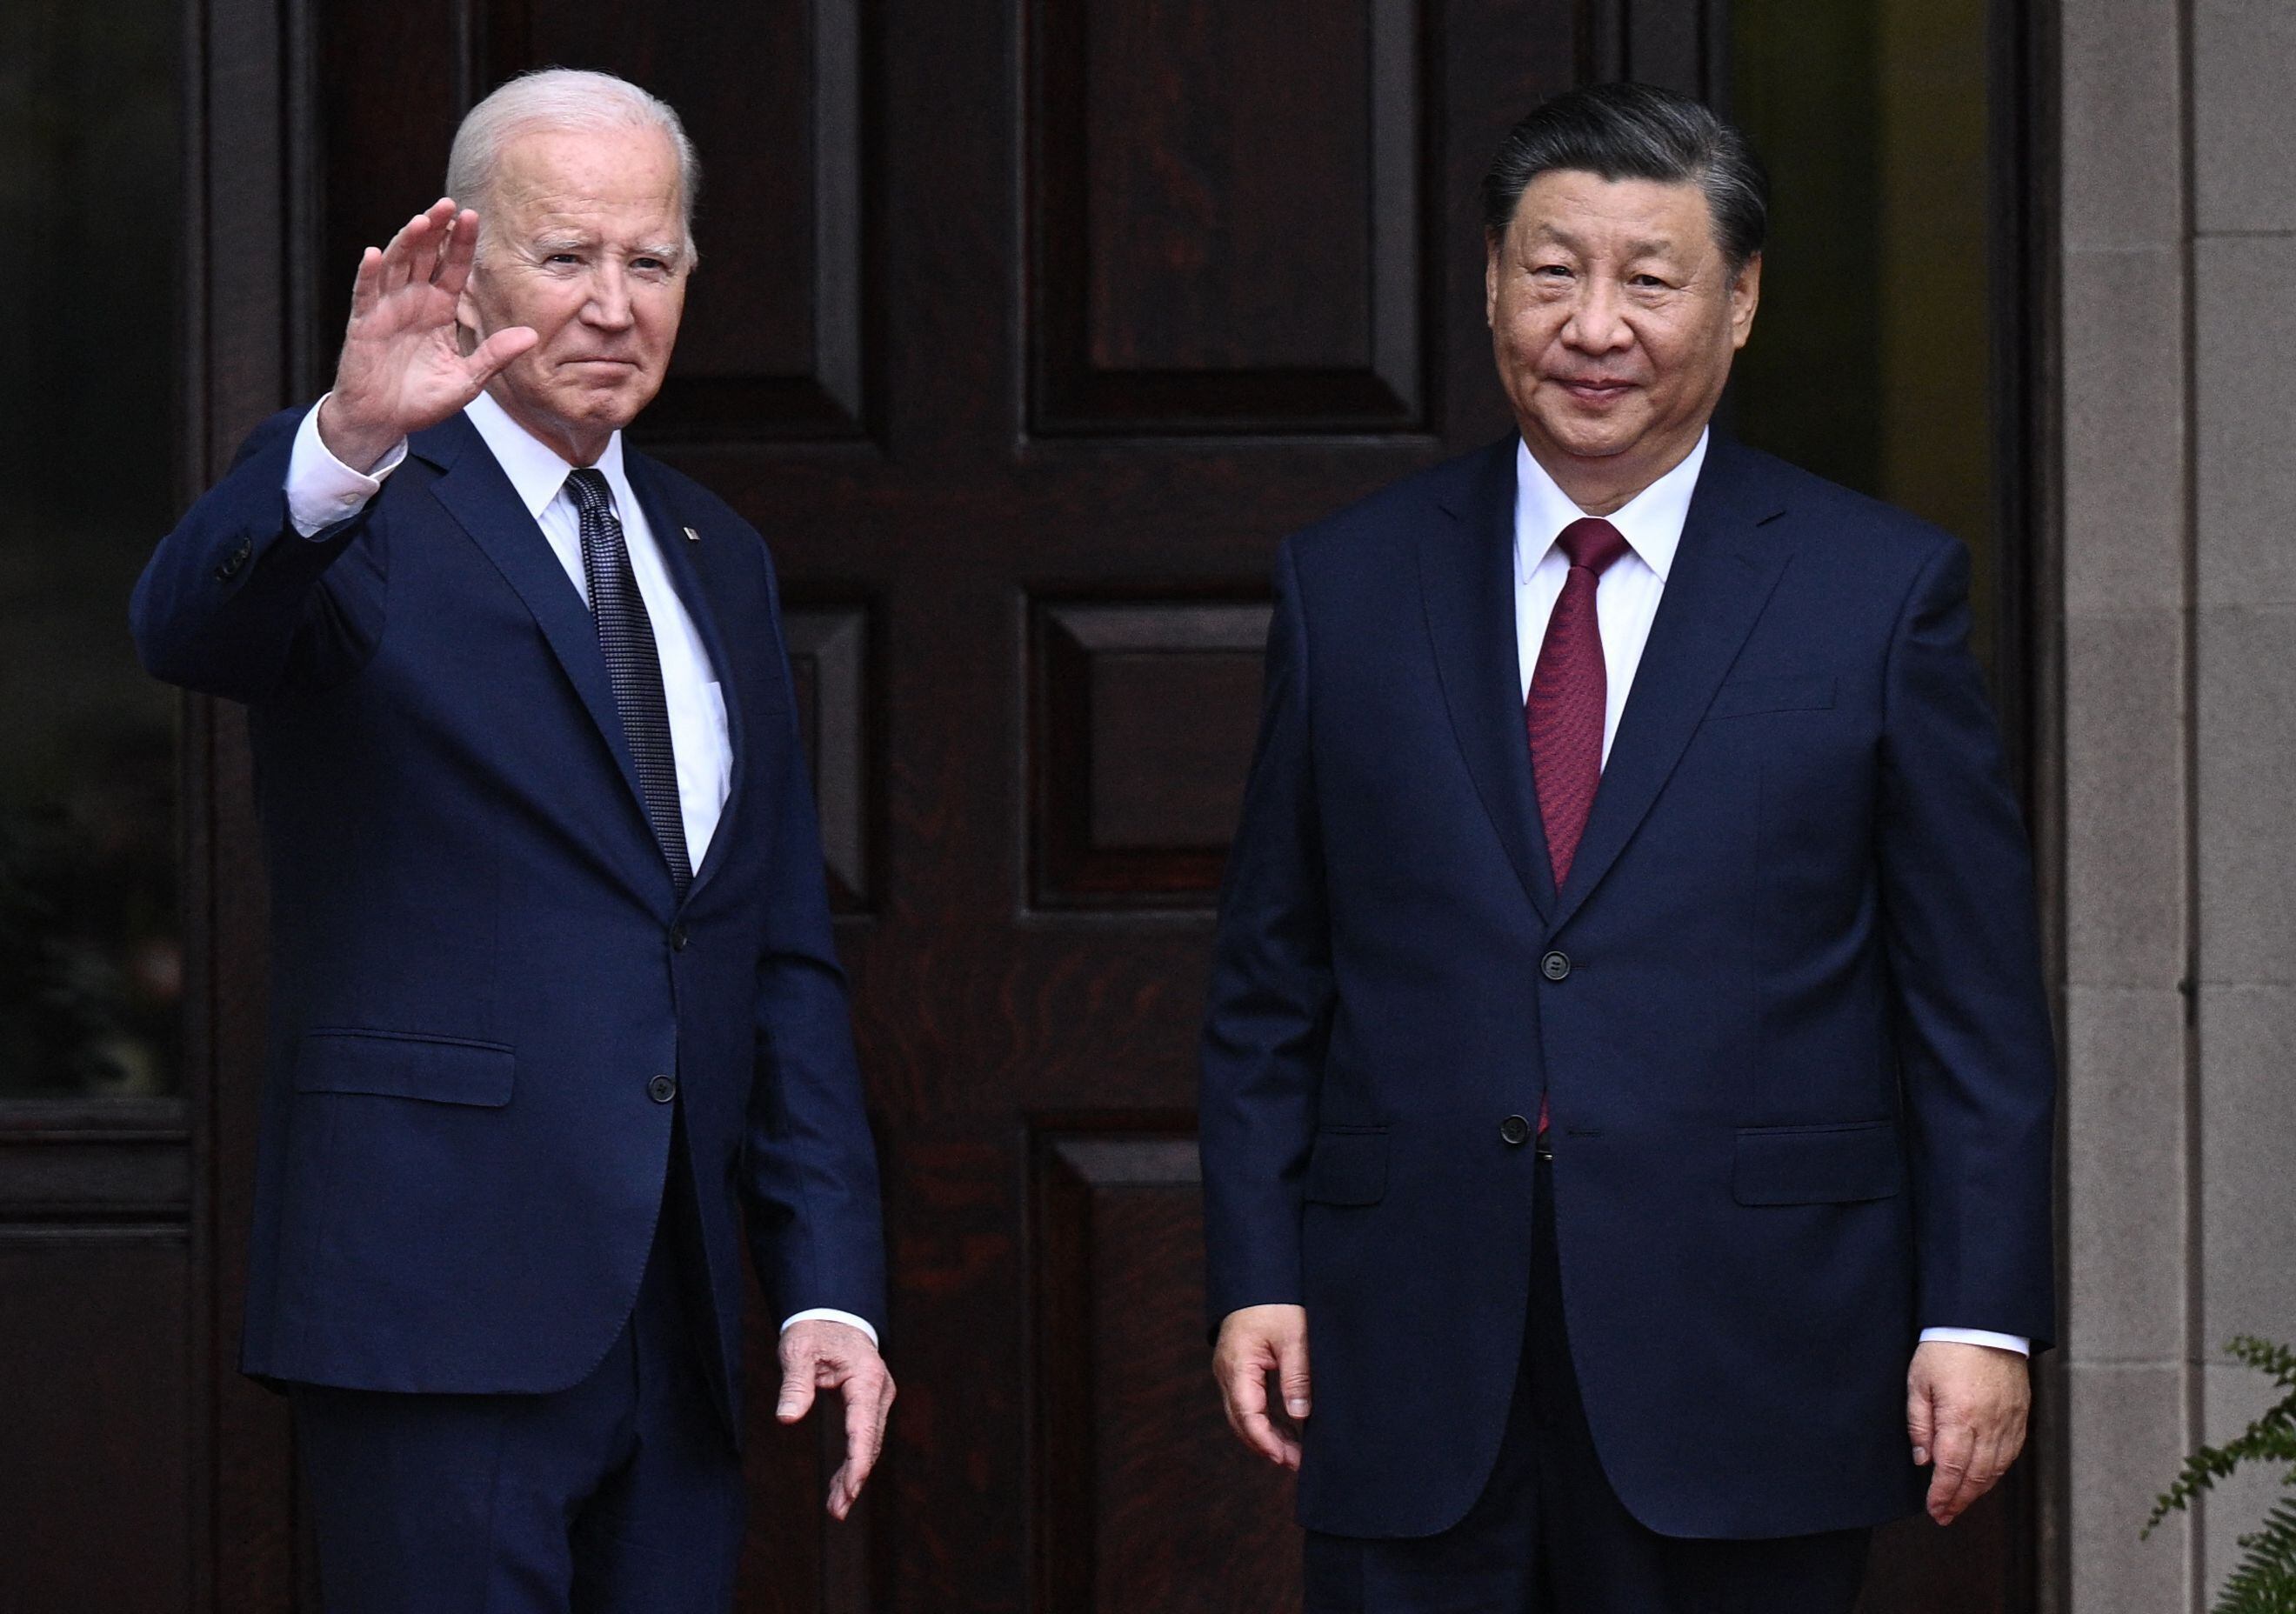 Estados Unidos advierte a China sobre implicaciones en crisis Ucrania 